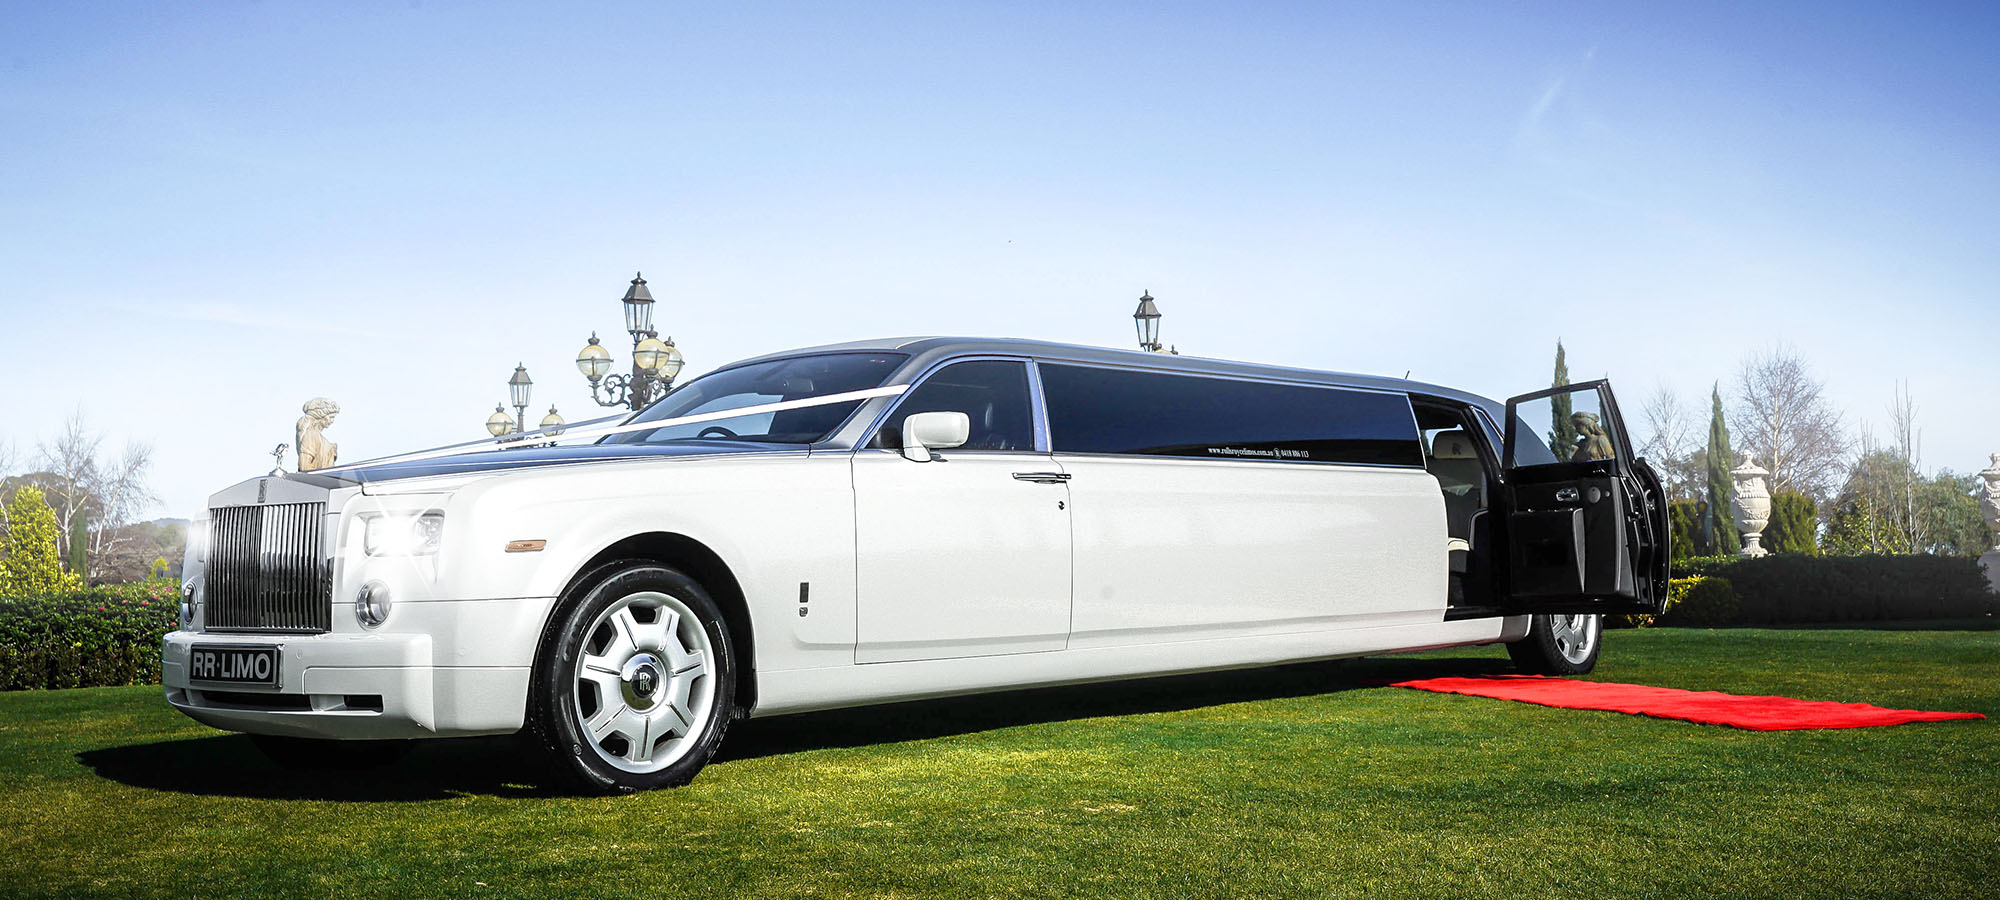 Limo Hire Melbourne - Limousine hire melbourne - White Rolls Royce - Wedding car hire Melbourne